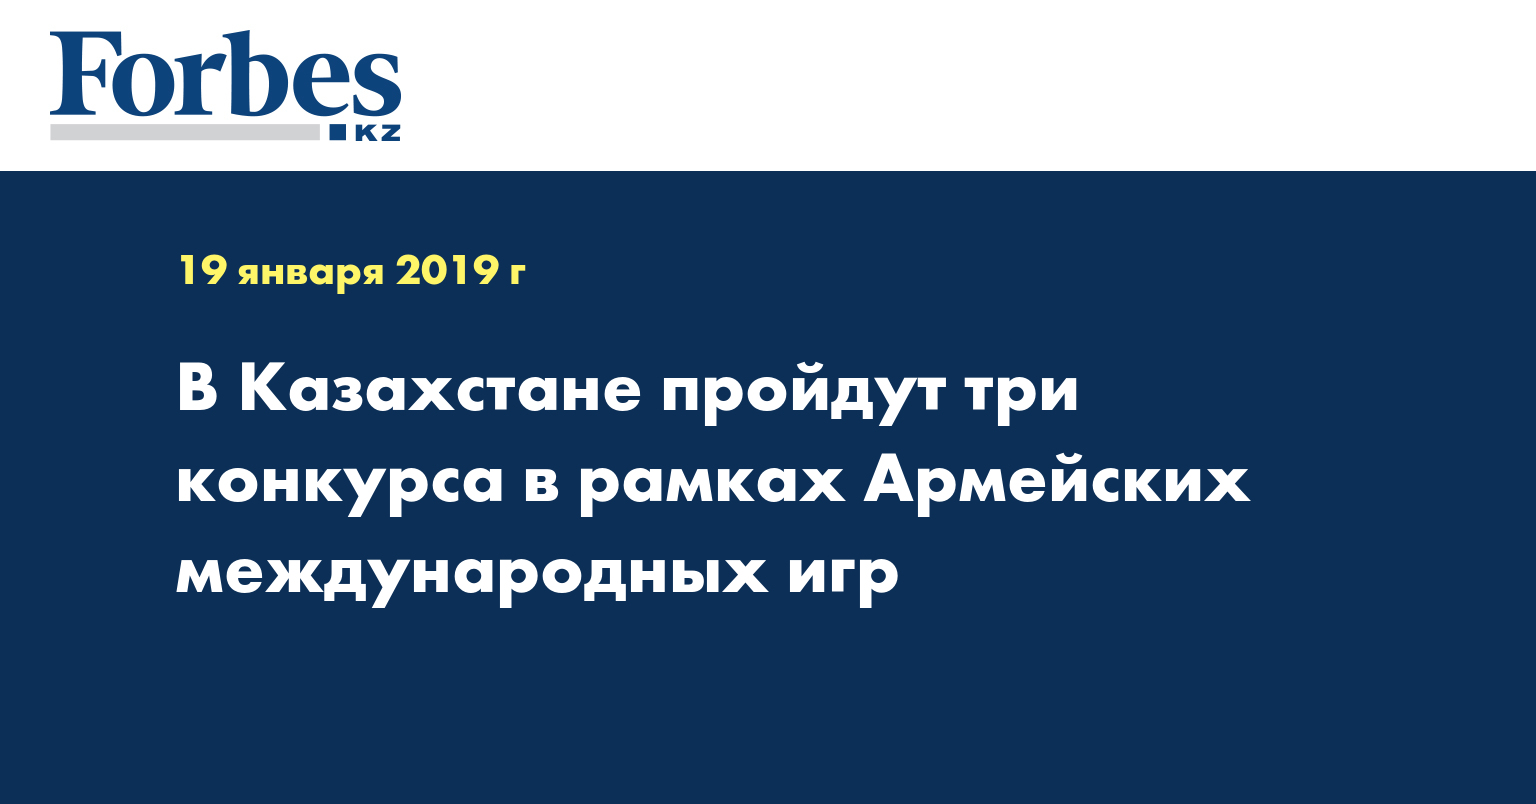 В Казахстане пройдут три конкурса в рамках Армейских международных игр